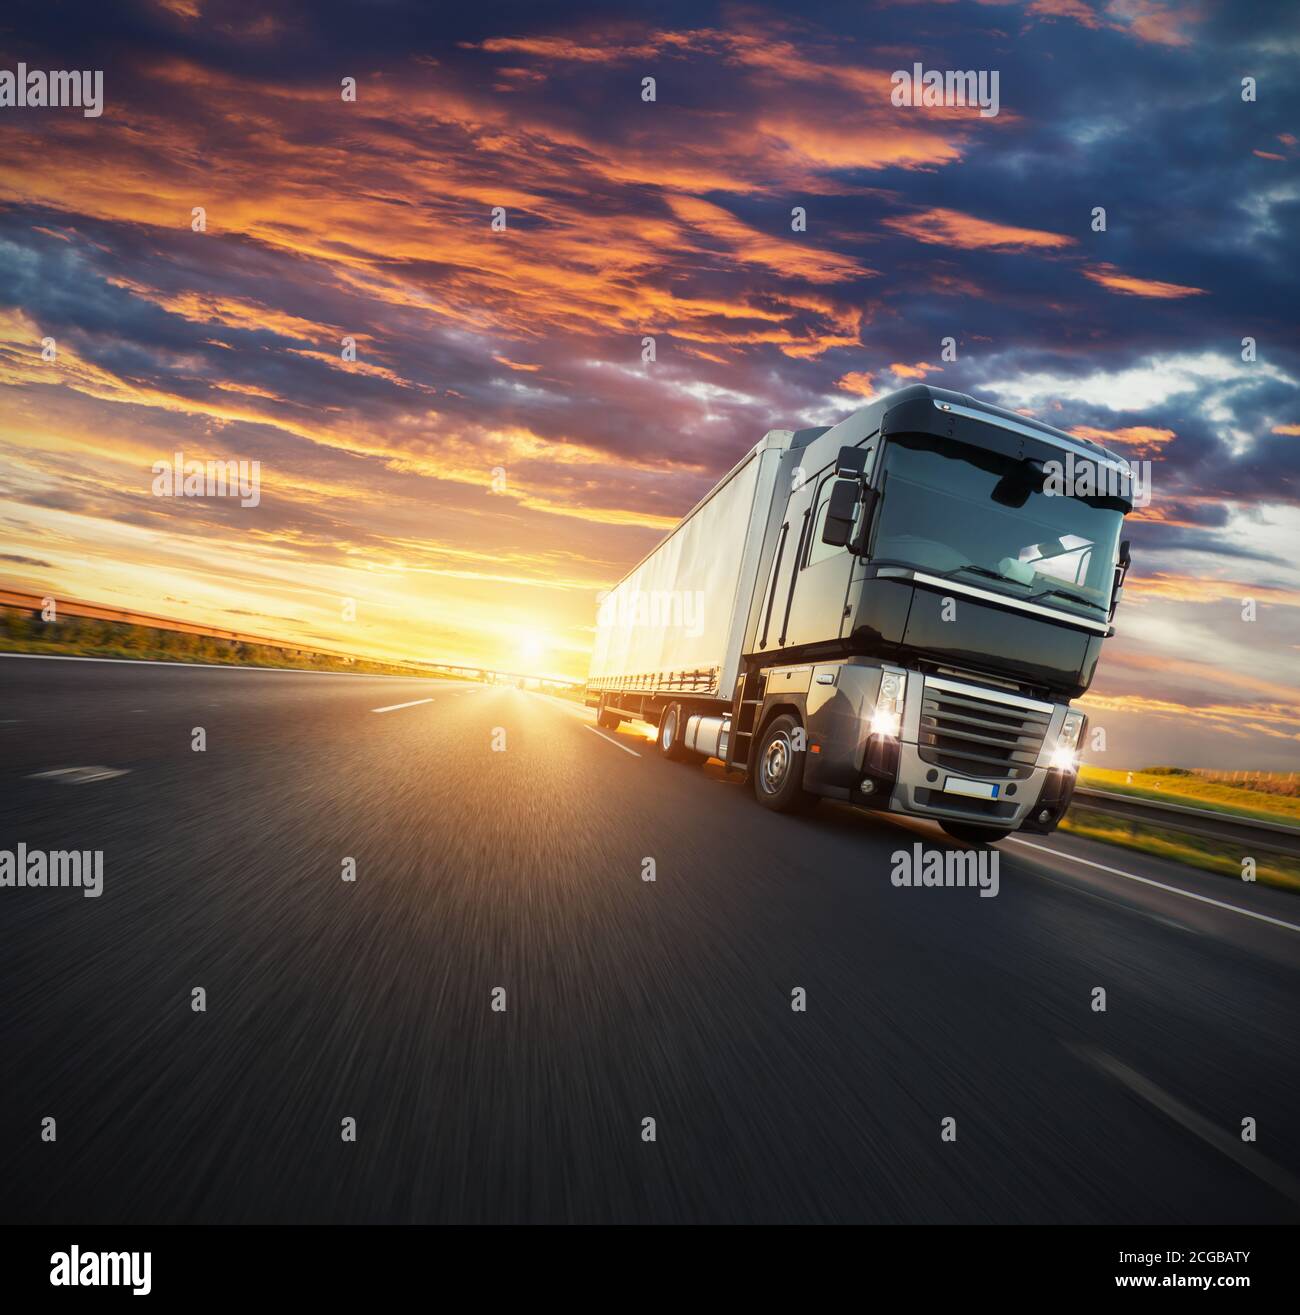 Camion européen sur autoroute avec lumière spectaculaire au coucher du soleil. Thème du transport de marchandises et de l'approvisionnement. Banque D'Images